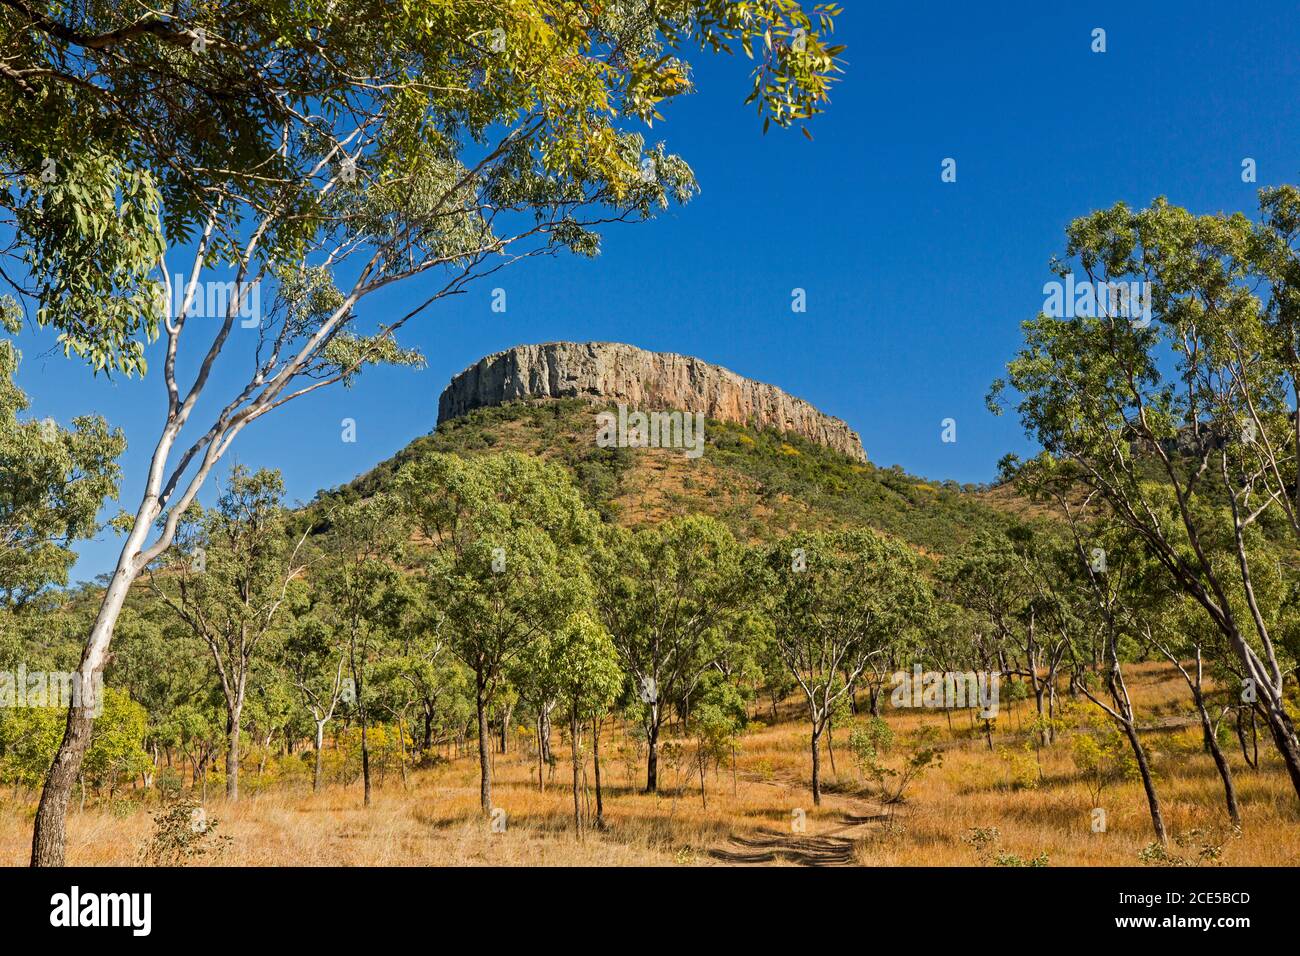 Lords Table Mountain en el Parque Nacional Peak Range cielo azul con el primer plano cubierto de árboles de goma en el outback Queensland Australia Foto de stock